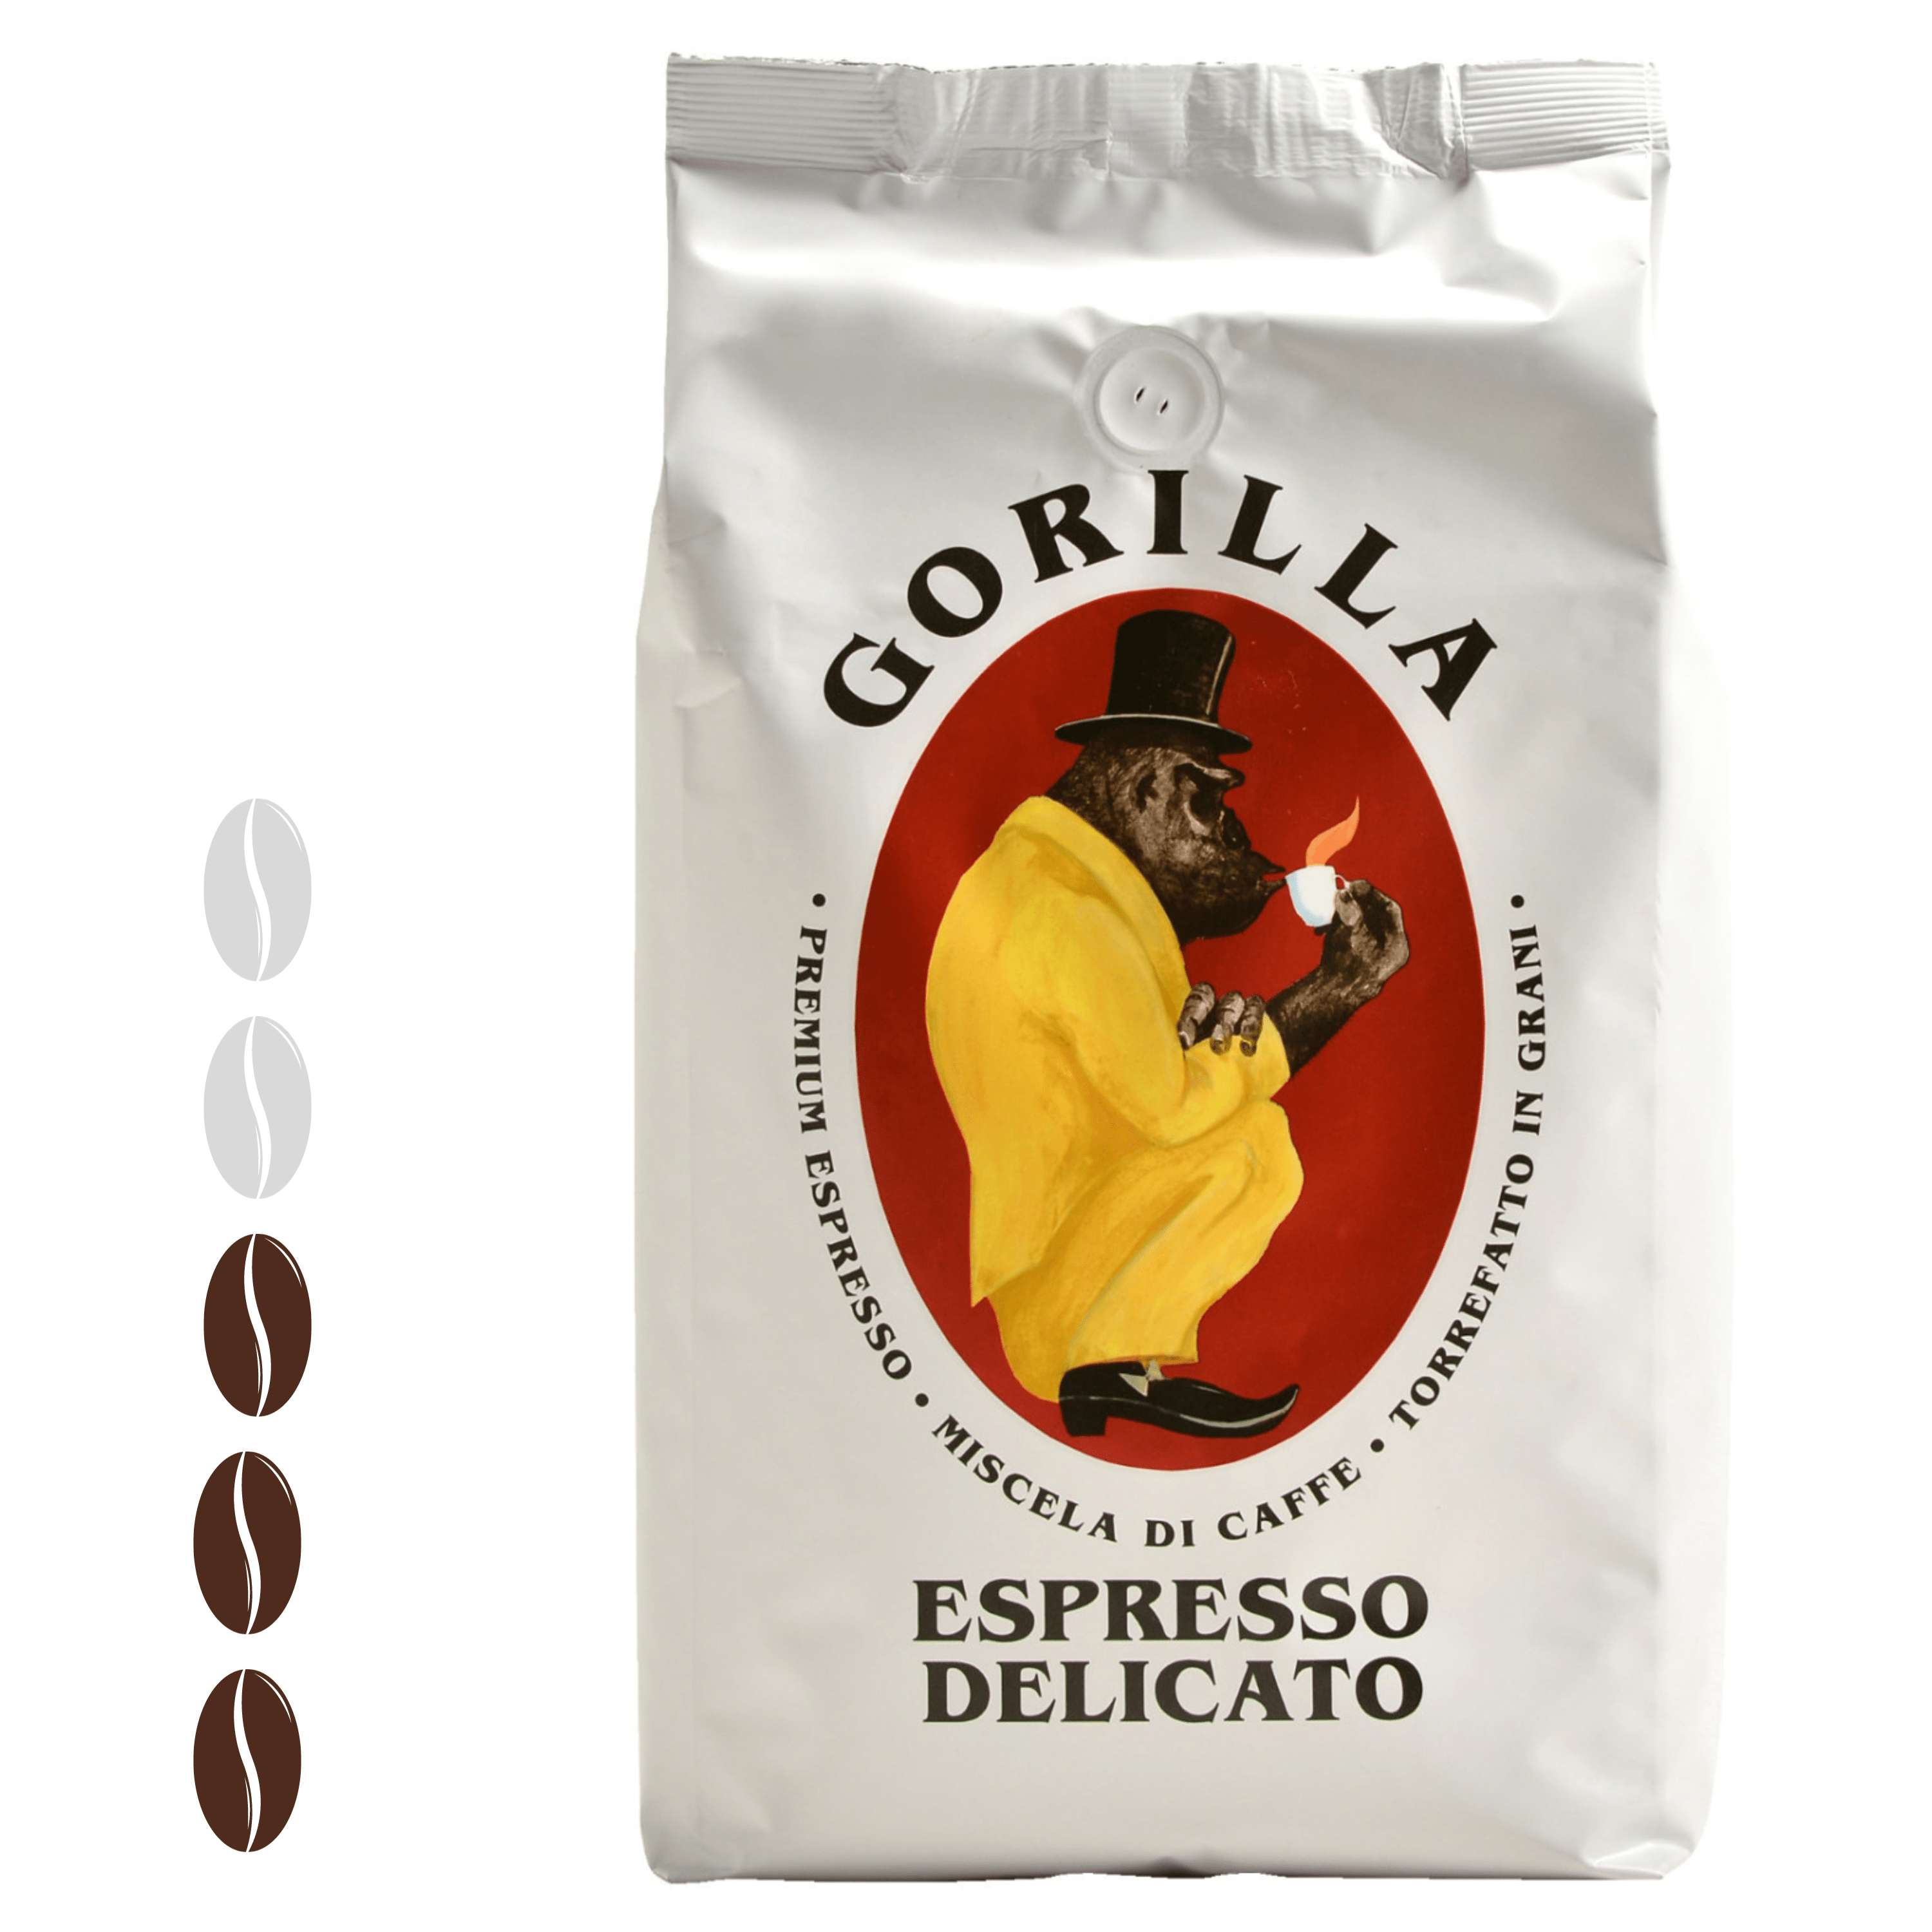 Gorilla Espresso Delicato ganze Bohnen 1 kg mild mit einer angenehmen Säure